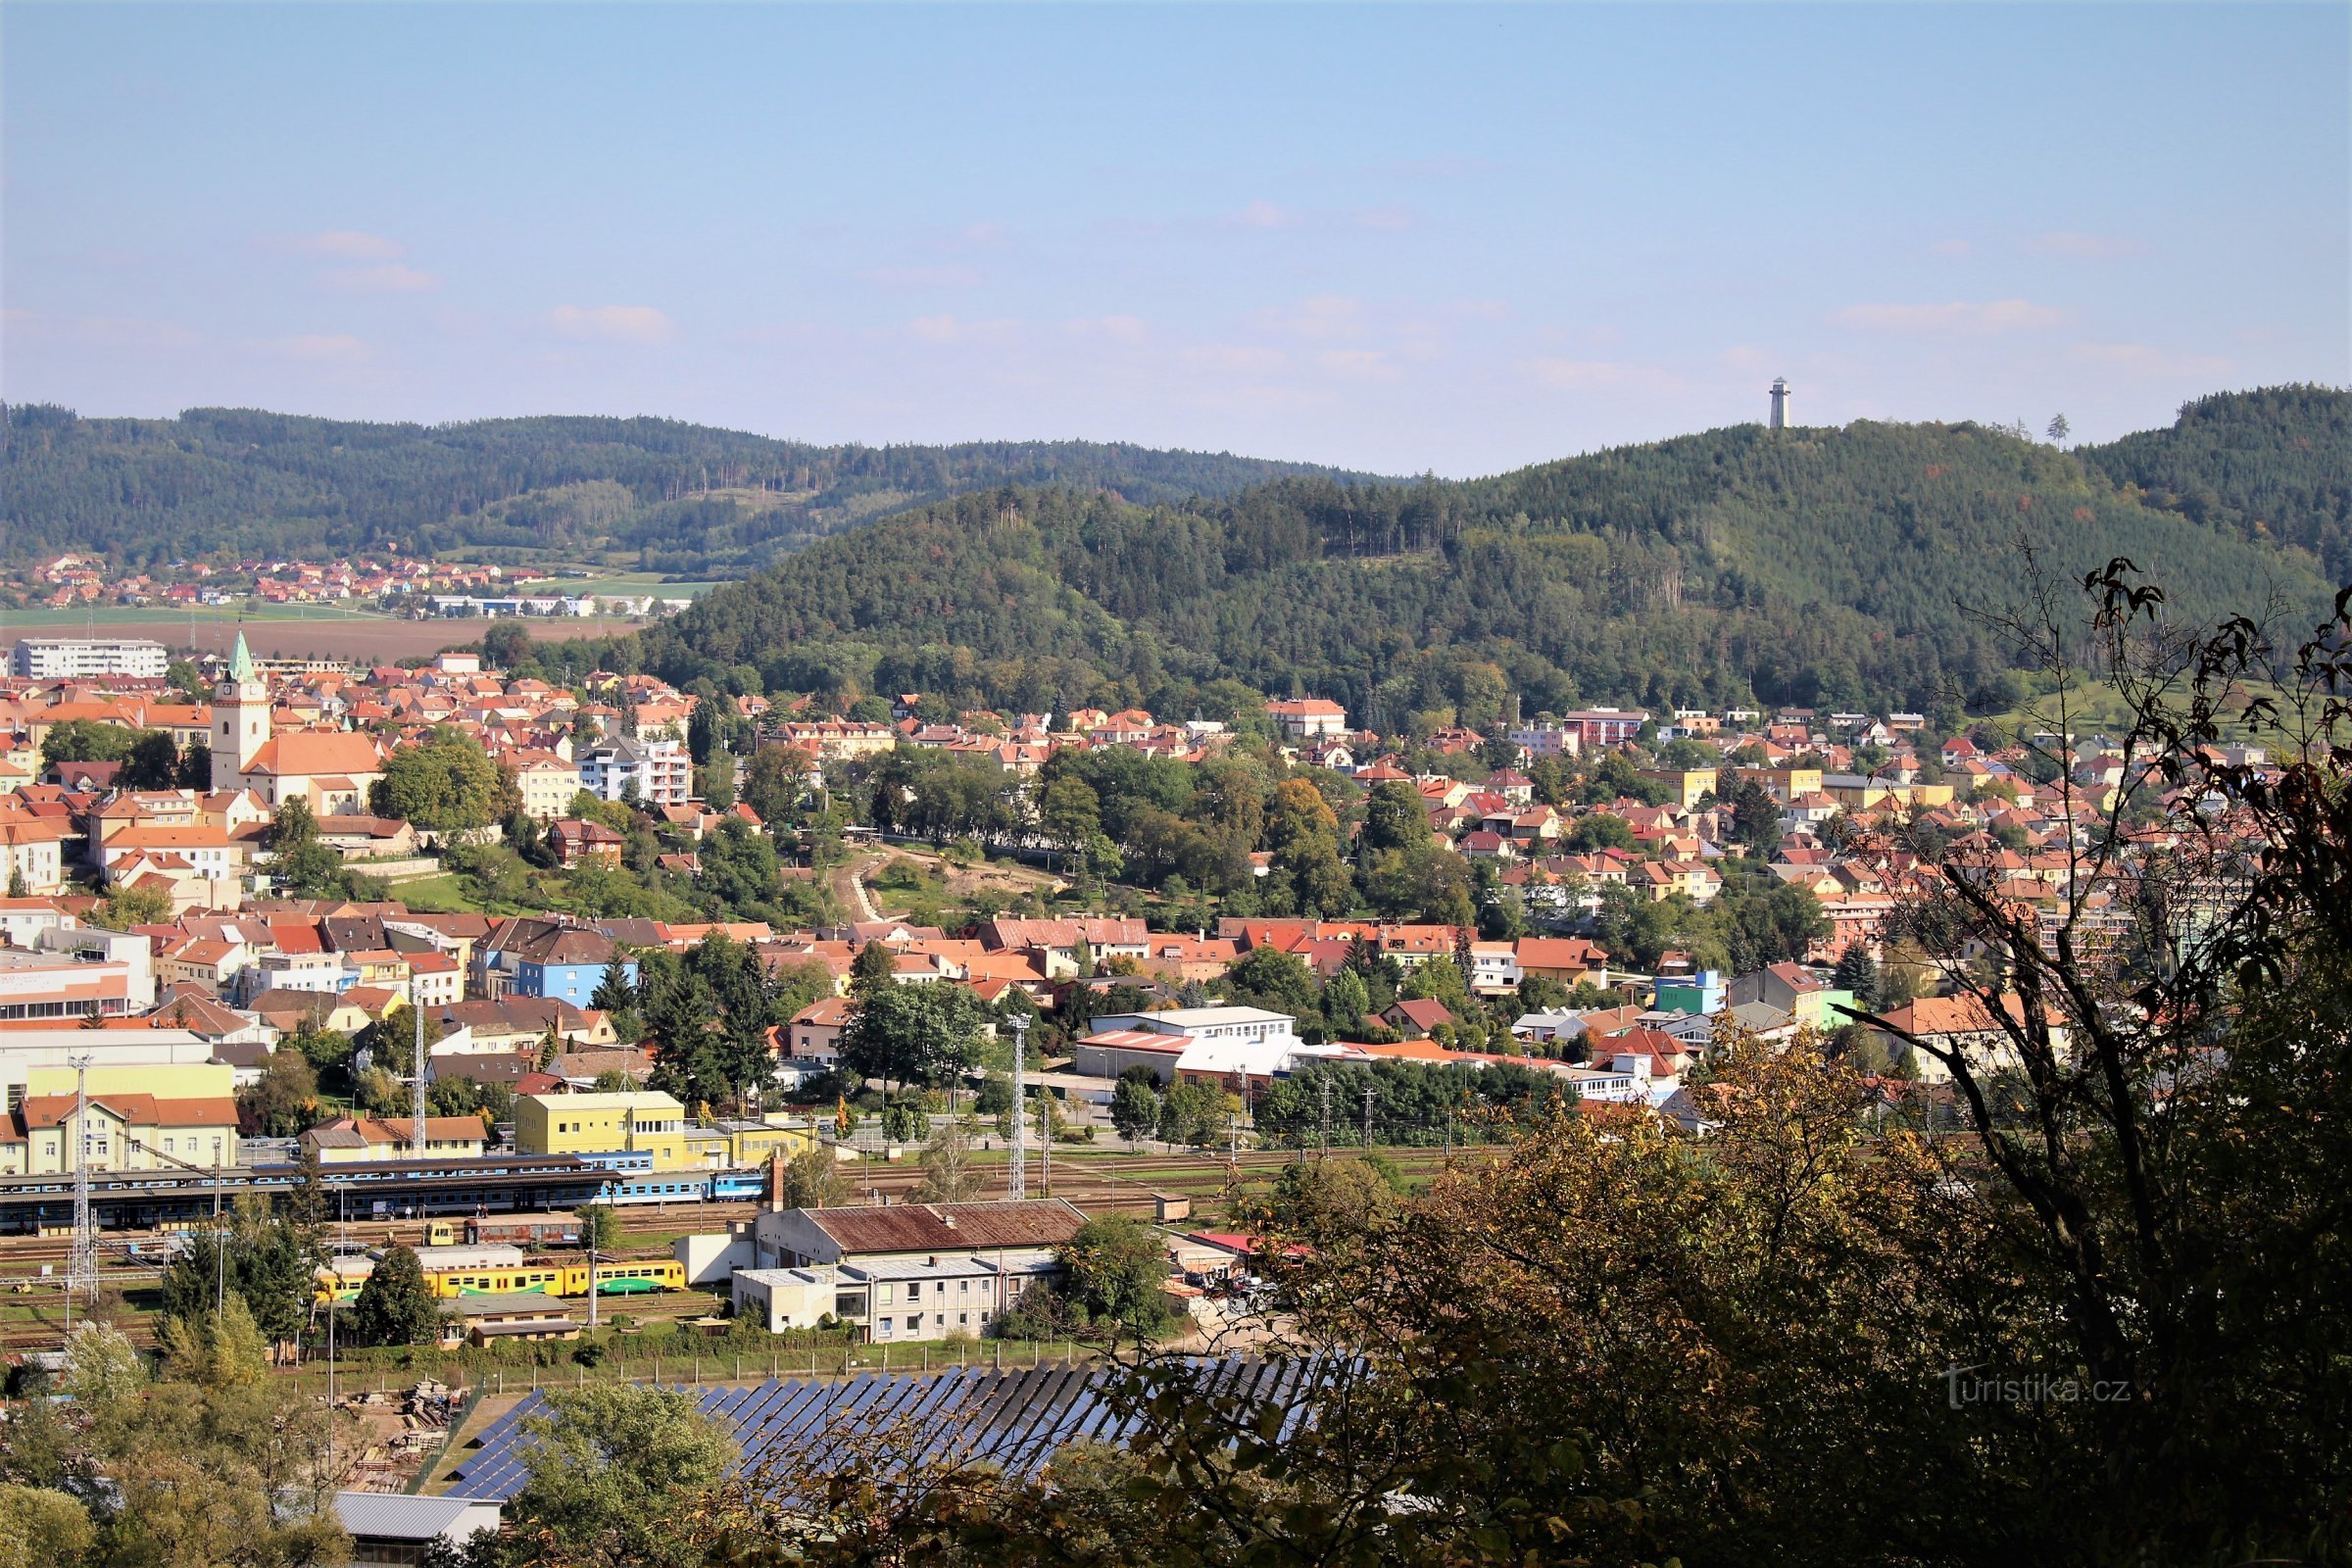 Utsikt från utsiktsplatsen Tišnov, i bakgrunden utsiktstornet på Klucanina